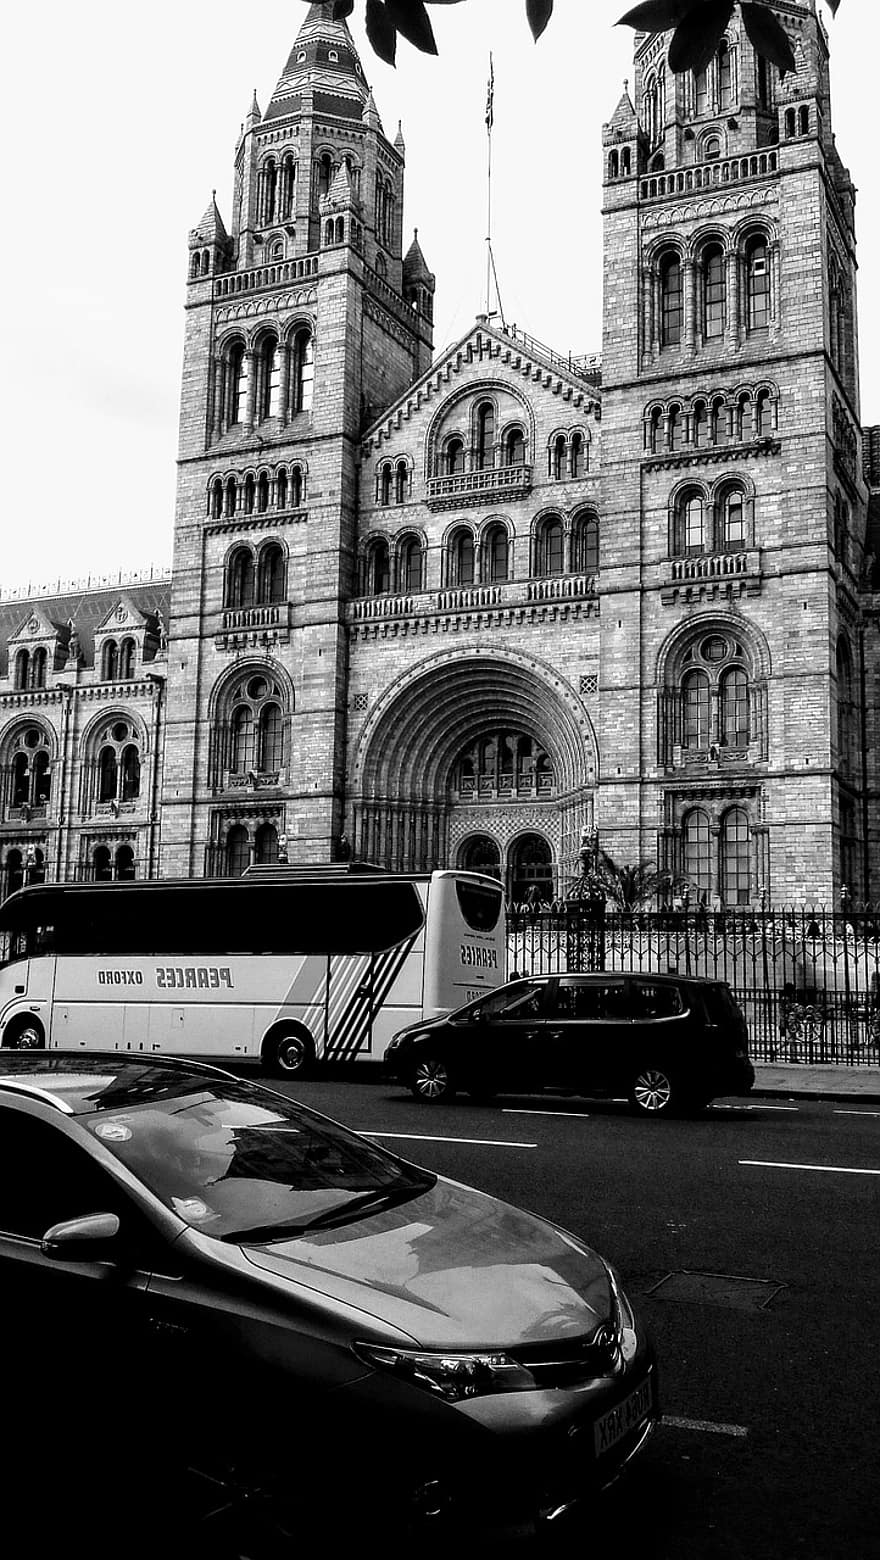 μουσείο φυσικής ιστορίας, Λονδίνο, αρχιτεκτονική, ορόσημο, μουσείο, Γοτθική Αρχιτεκτονική Αναγέννησης, αυτοκίνητο, λεωφορείο, μαύρο και άσπρο, ΚΙΝΗΣΗ στους ΔΡΟΜΟΥΣ, τρόπο μεταφοράς